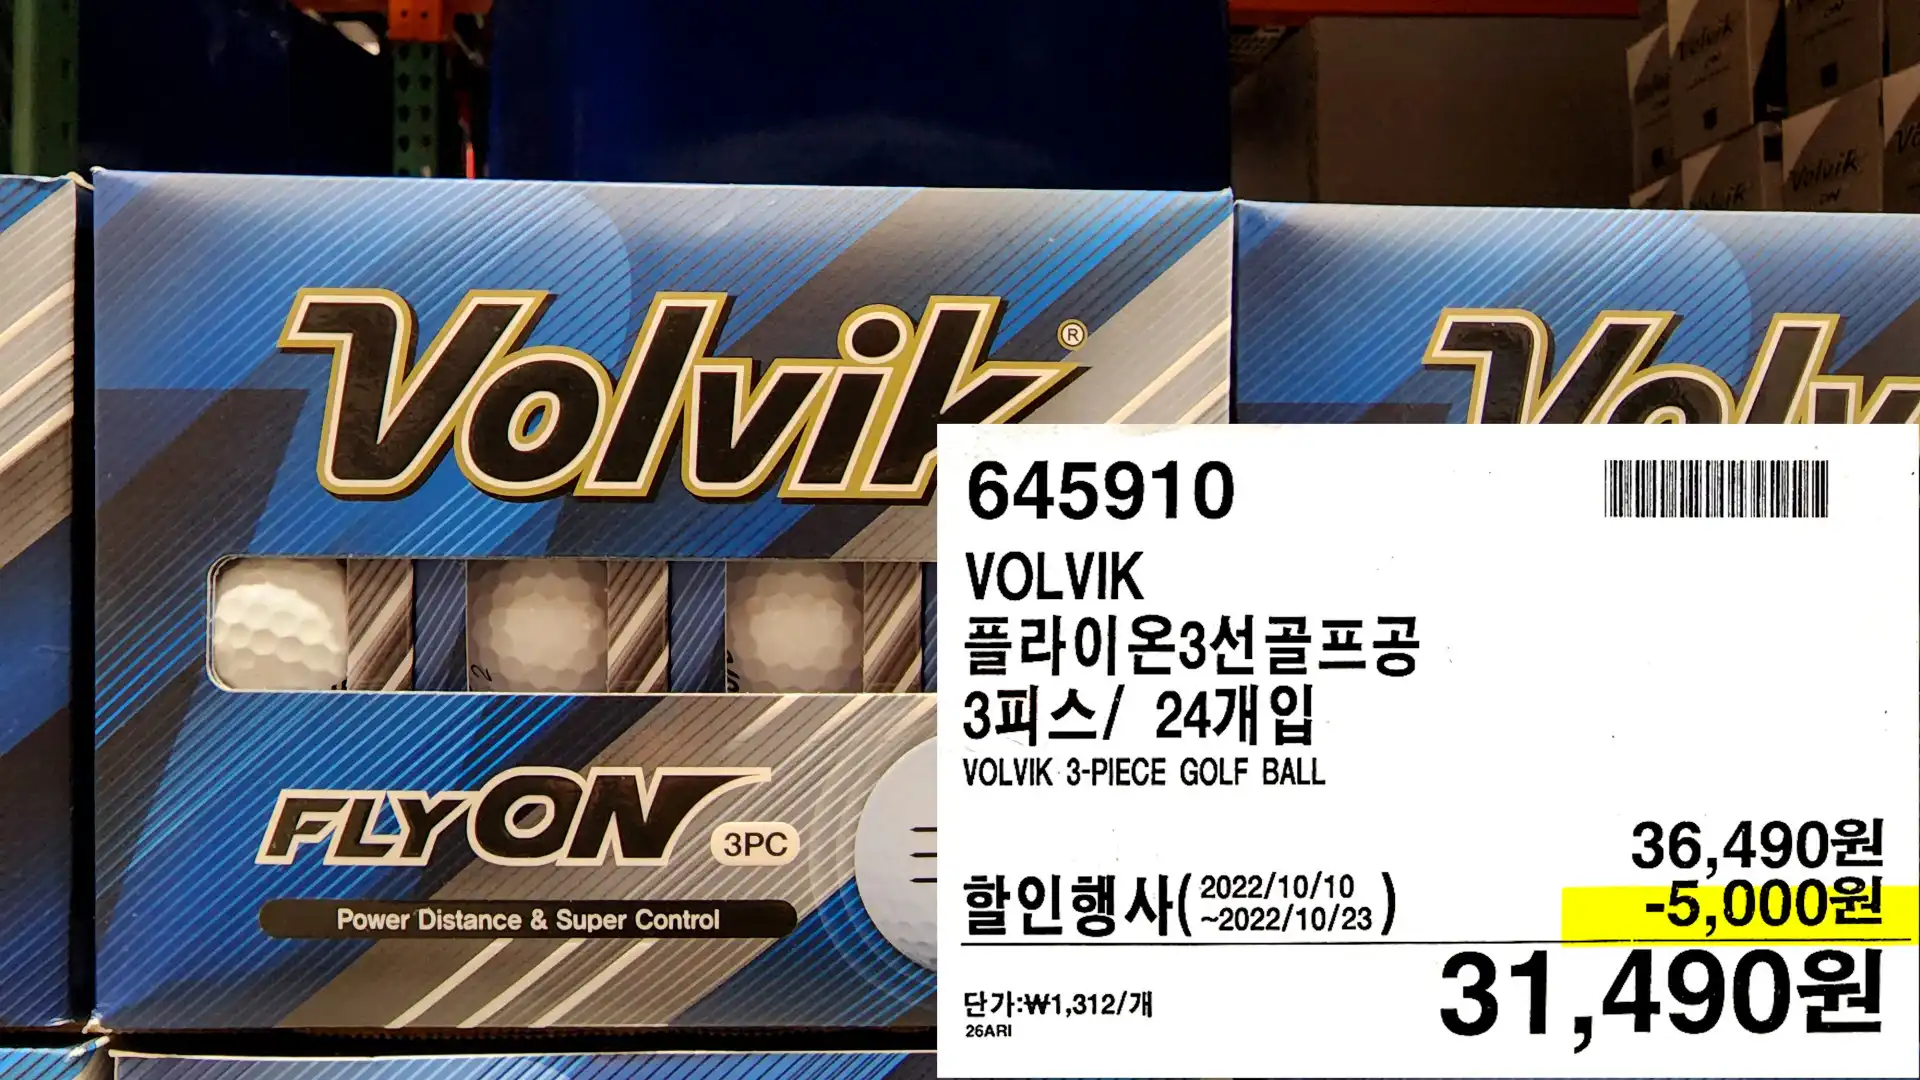 VOLVIK
플라이온3선골프공
3피스/ 24개입
VOLVIK 3-PIECE GOLF BALL
31,490원